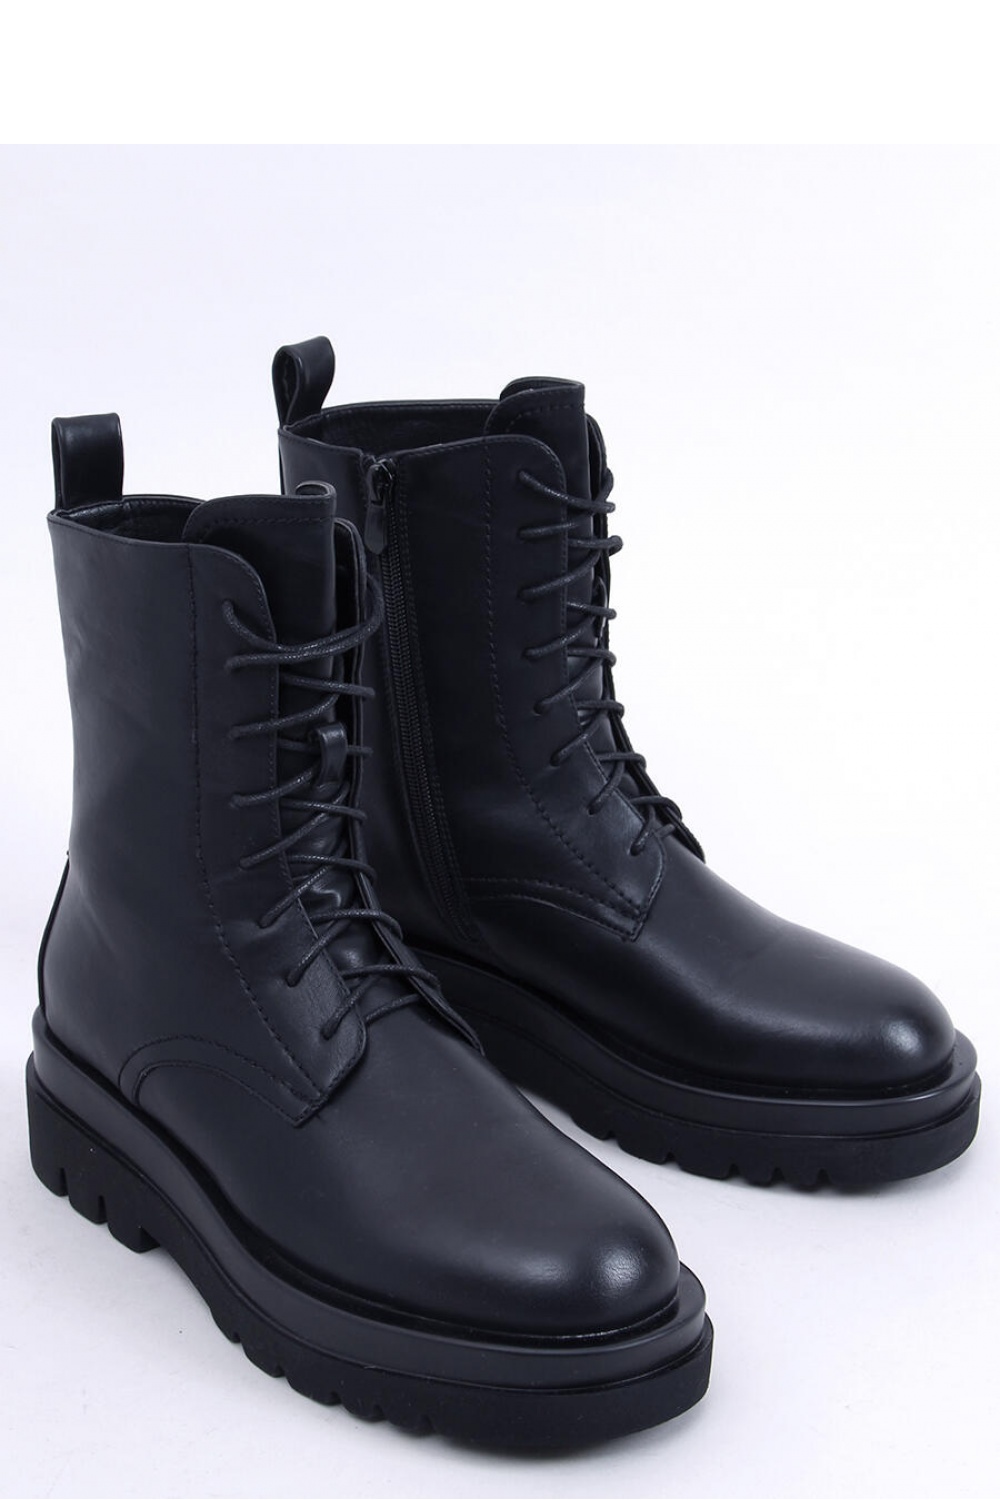  Boots model 174062 Inello  black